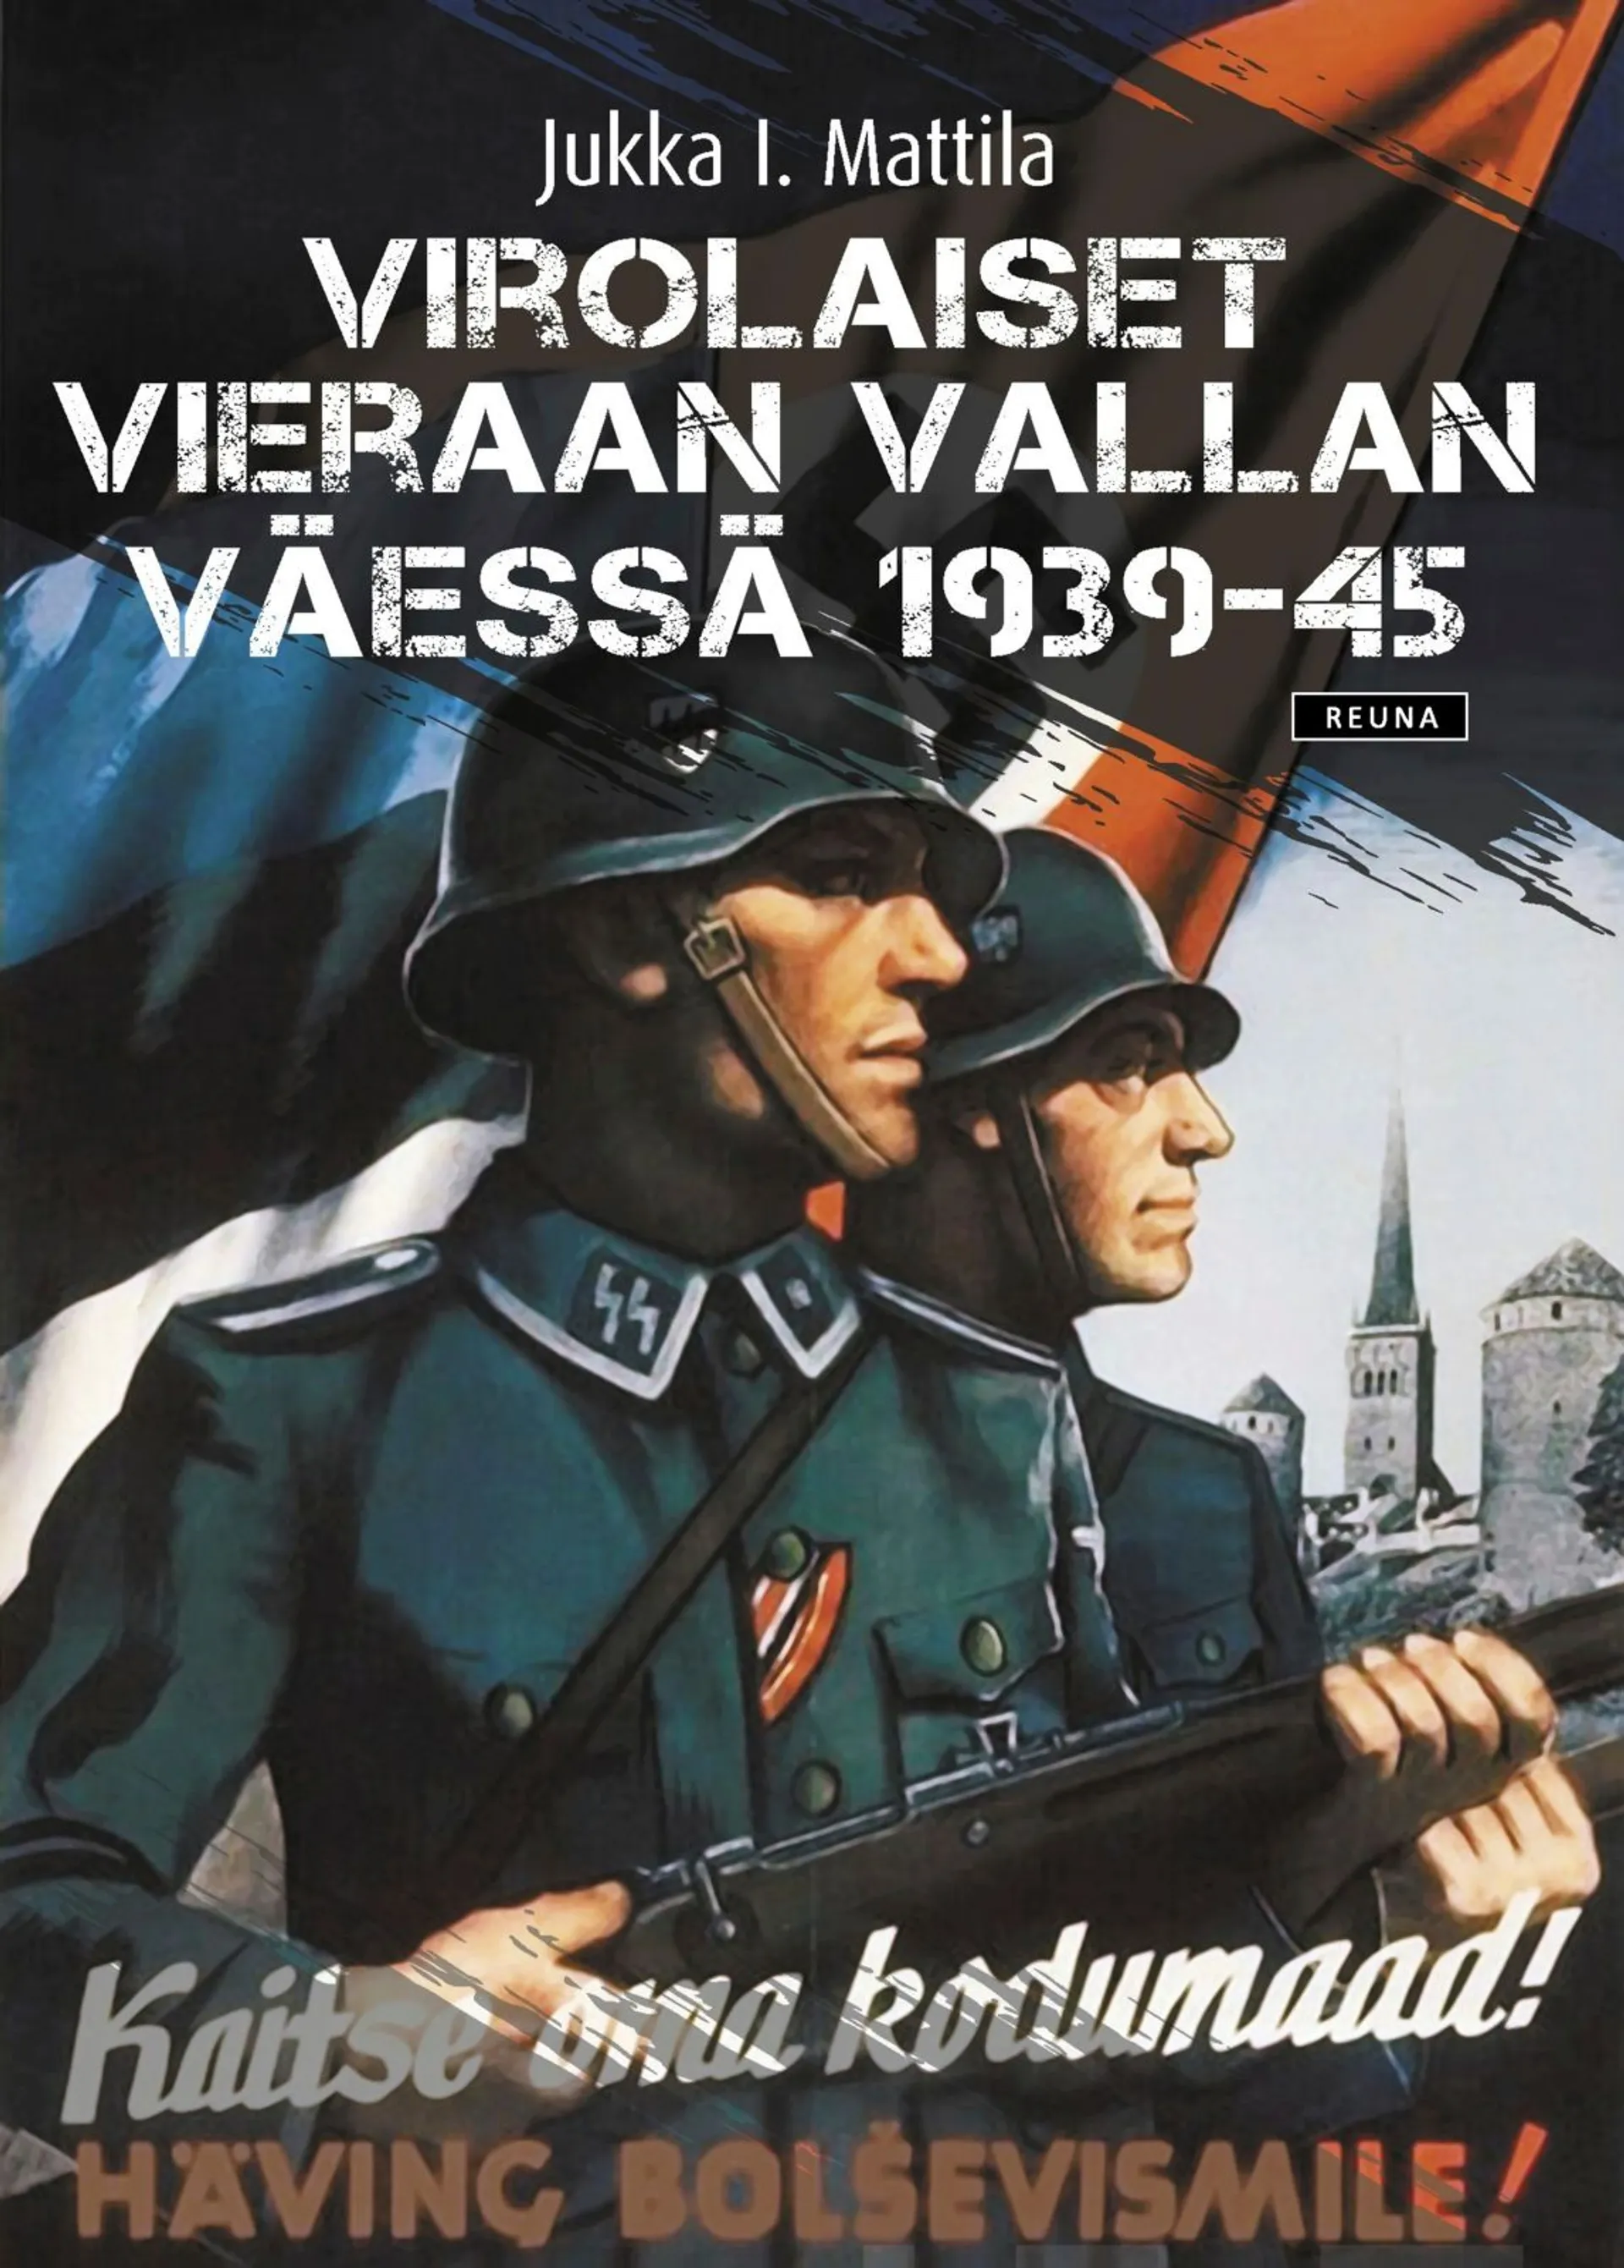 Mattila, Virolaiset vieraan vallan väessä 1939-45